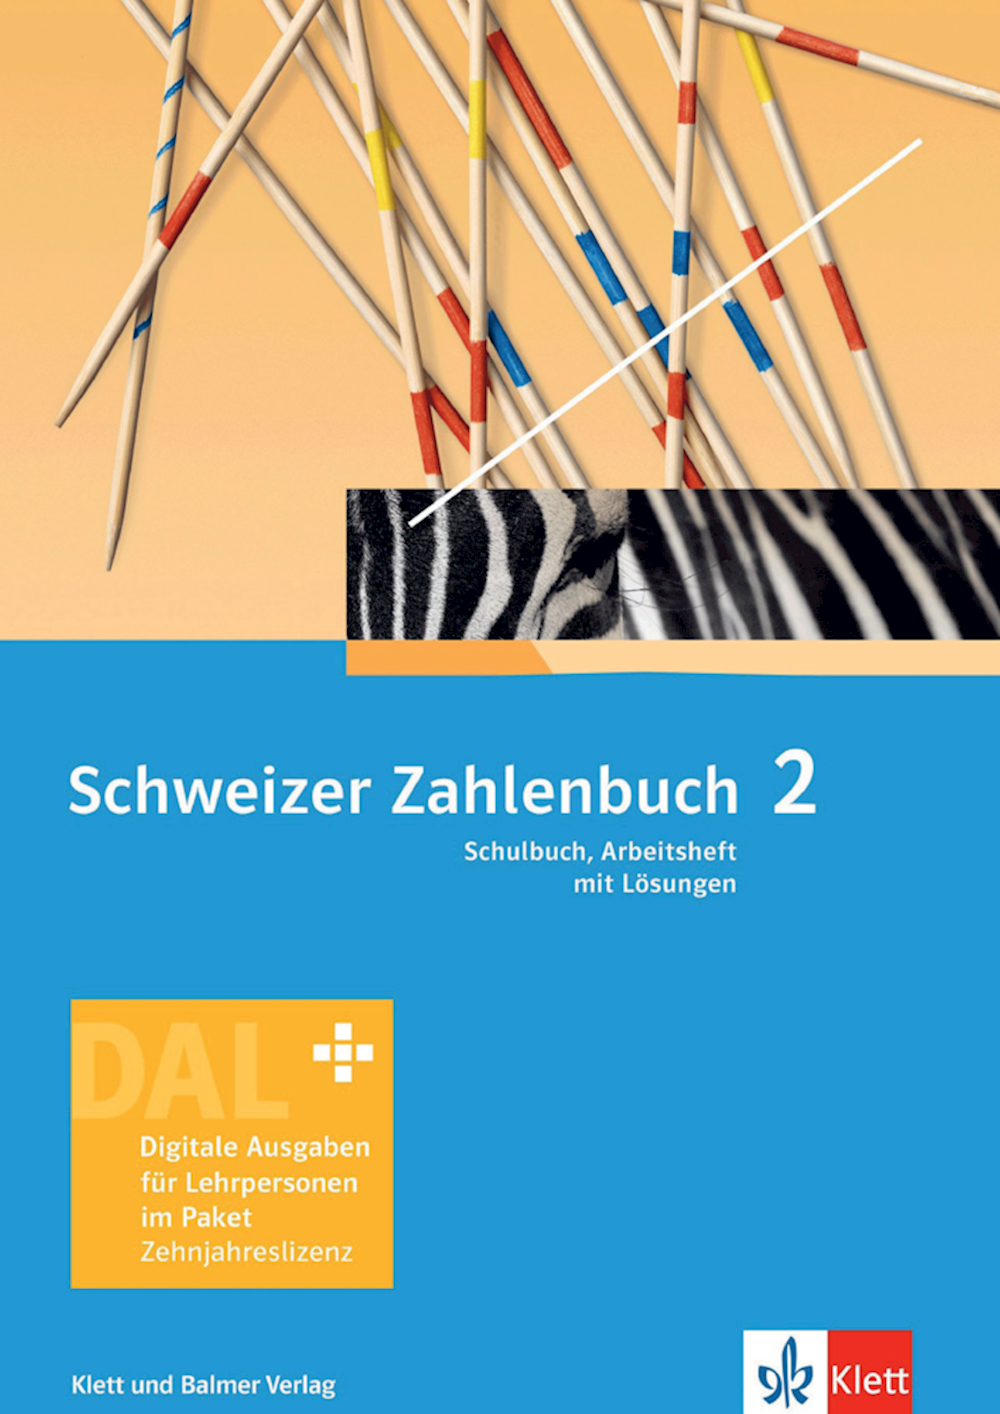 Schweizer Zahlenbuch 2 Neue Ausgabe Digitale Ausga